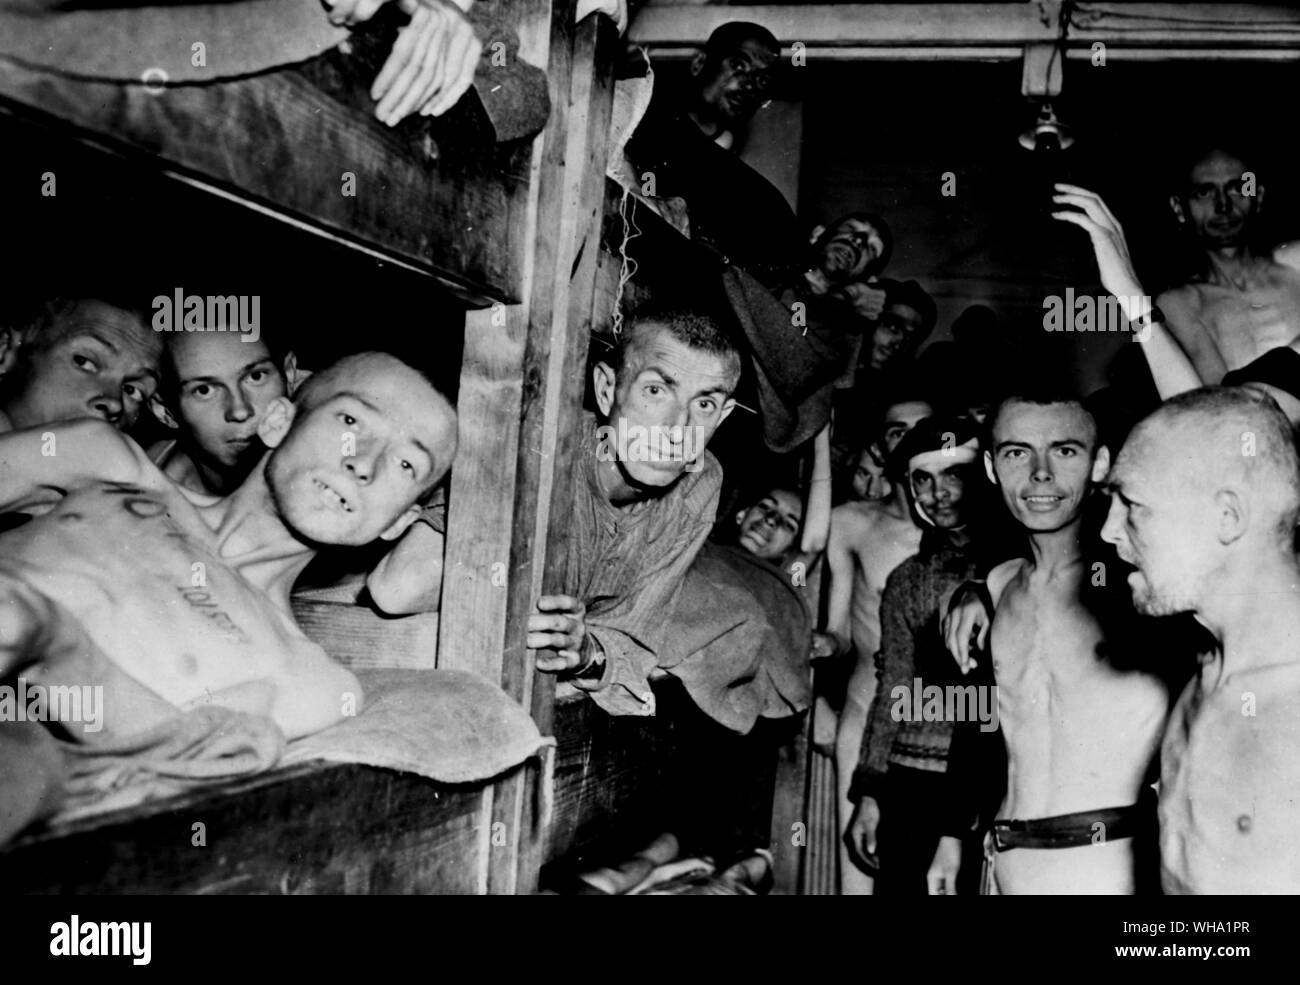 Wk 2: Gaunt, ausgehungert Gefangene, typisch für die von der deutschen Konzentrationslager durch die Alliierten. Beachten Sie die Kennzeichnung der Tätowierung auf der Brust des Mannes auf der linken Seite. Stockfoto